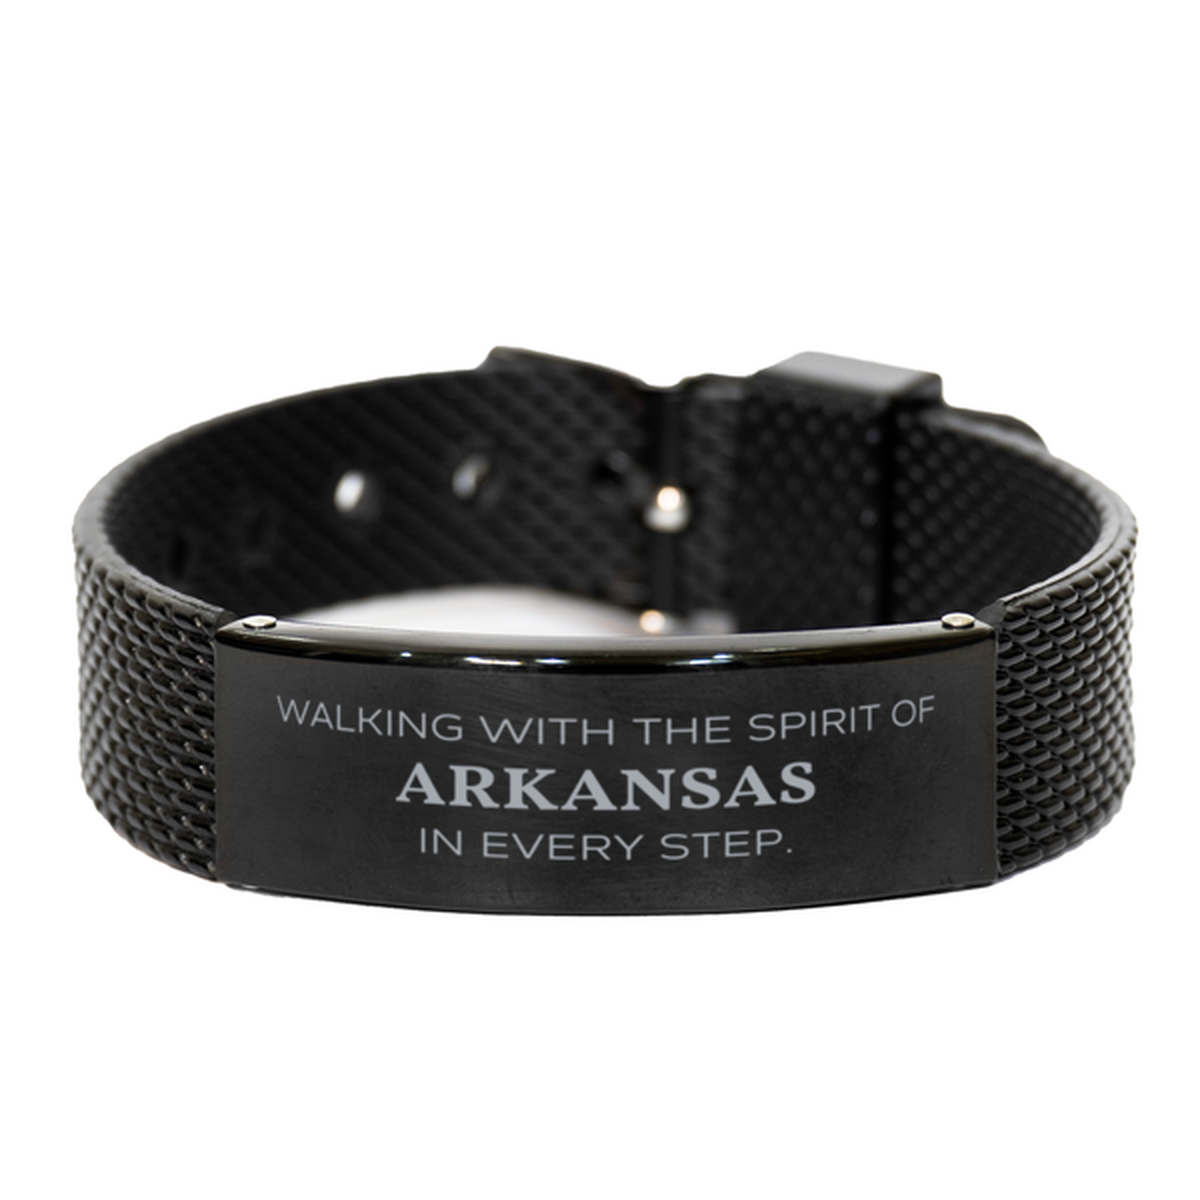 Arkansas Gifts, Walking with the spirit, Love Arkansas Birthday Christmas Black Shark Mesh Bracelet For Arkansas People, Men, Women, Friends